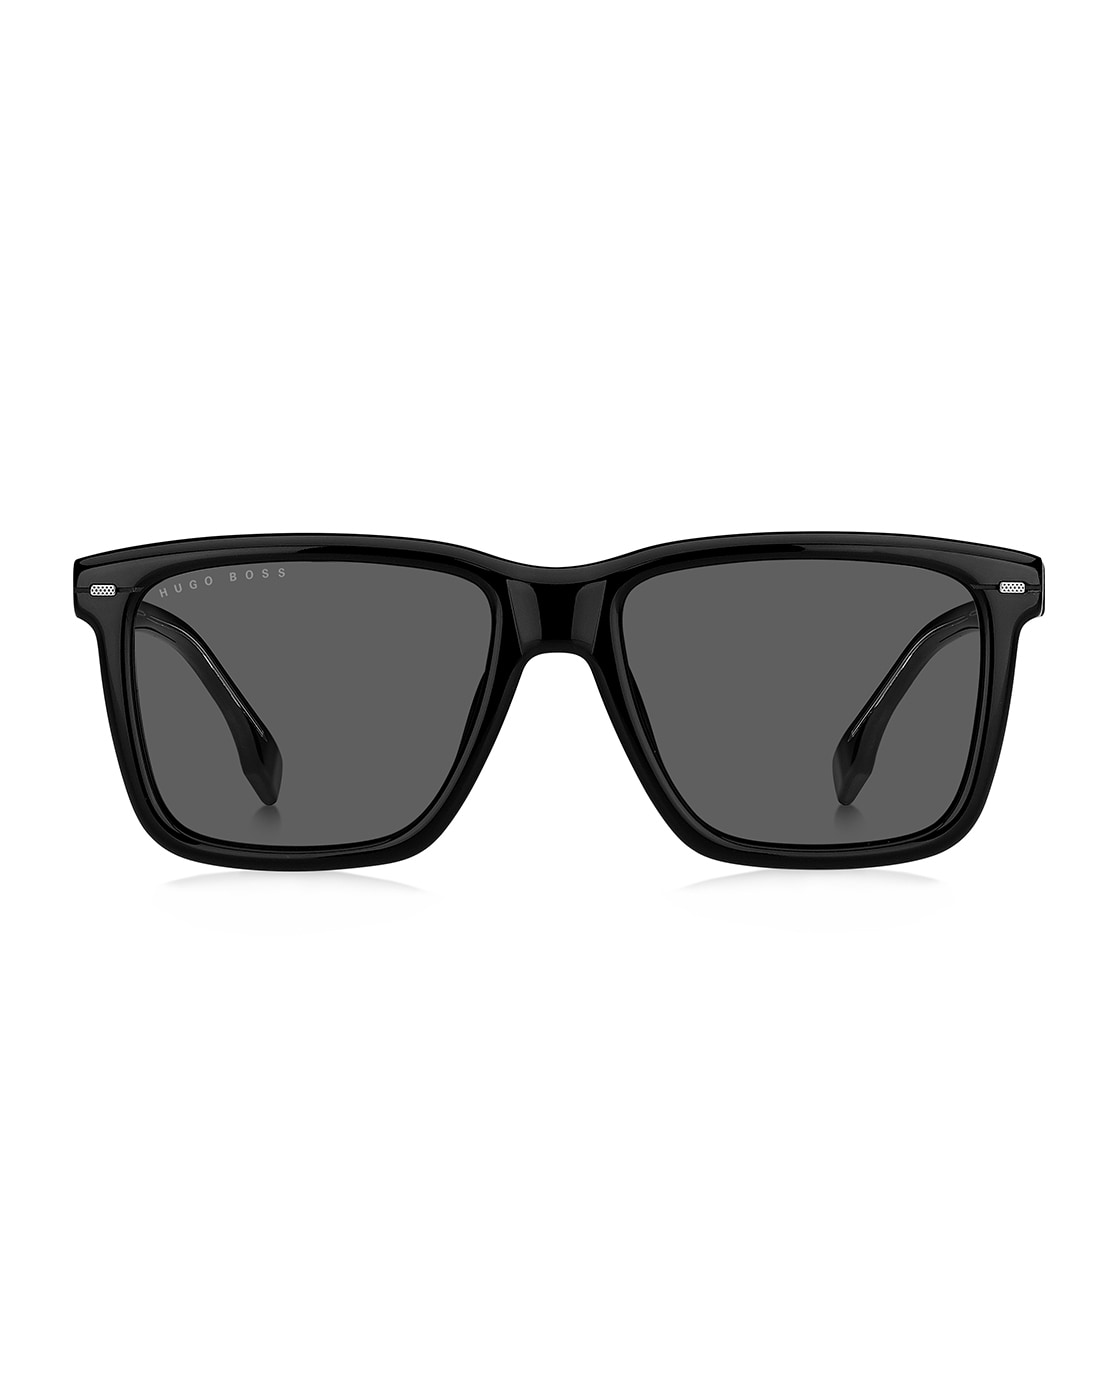 BOSS by Hugo Boss Men's B0623S Wayfarer Sunglasses,Havana Black Crystal,55  mm : Amazon.in: Fashion